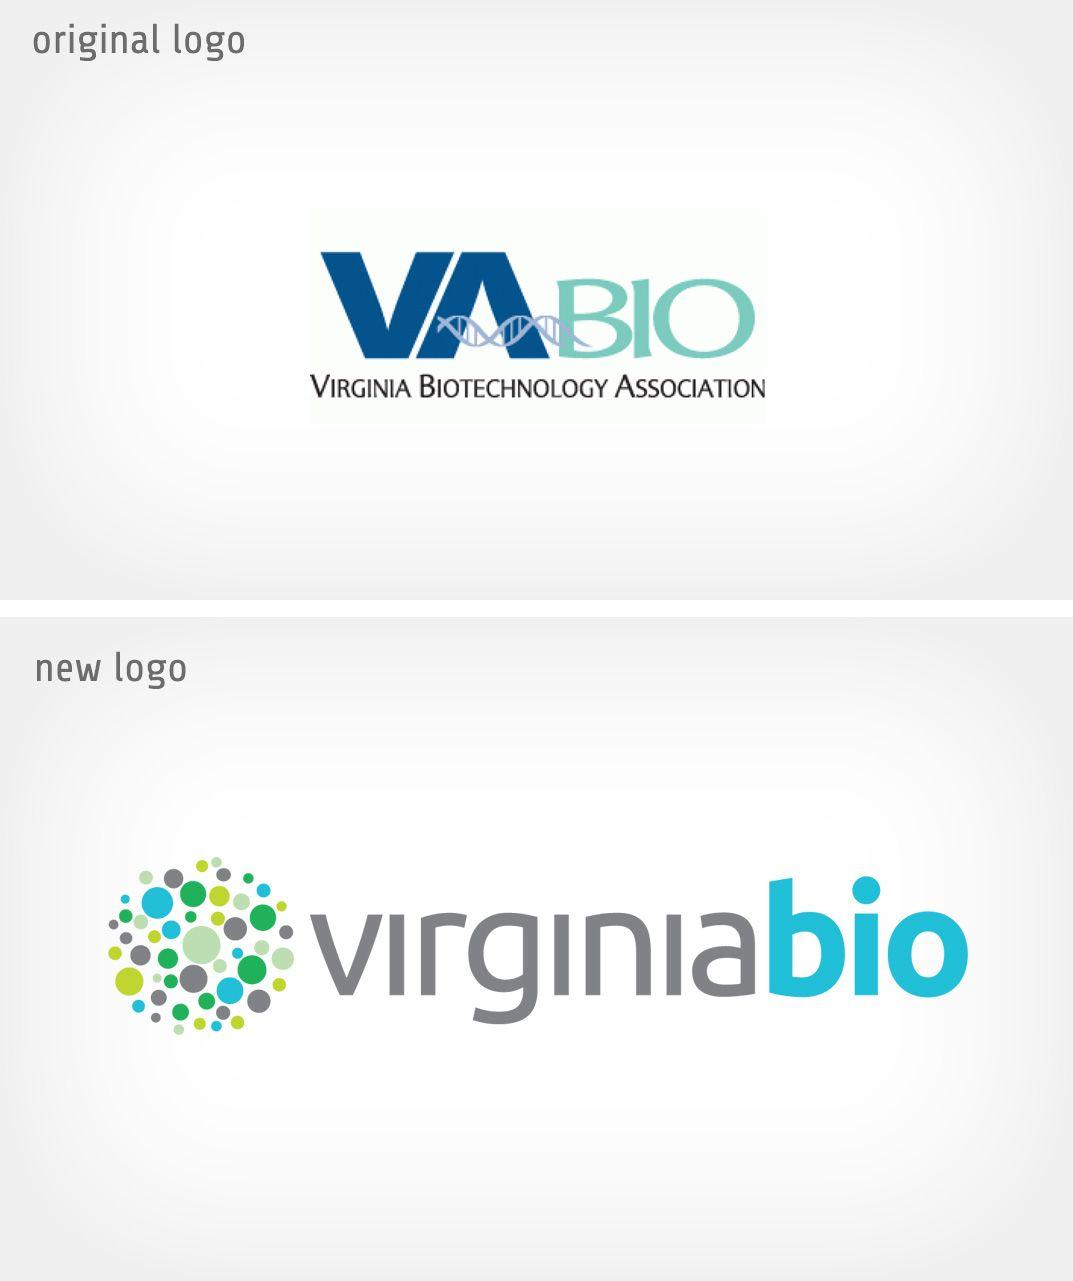 Association Logo - Biotech association logo redesign for Virginia Bio—rebrand by Raison ...